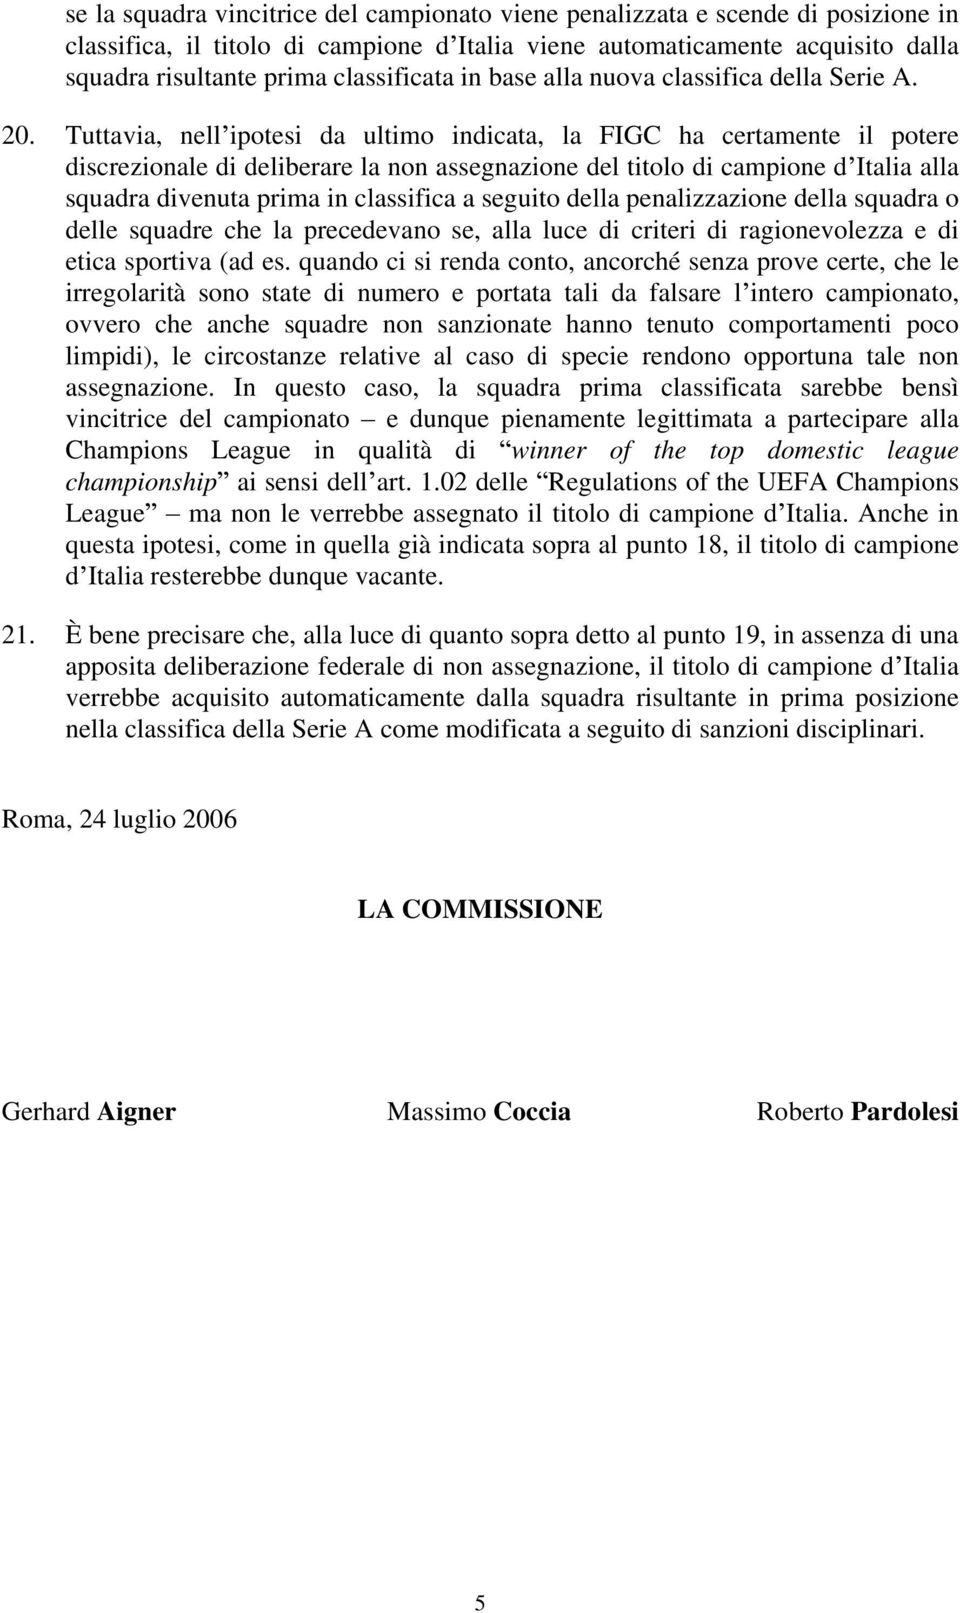 Tuttavia, nell ipotesi da ultimo indicata, la FIGC ha certamente il potere discrezionale di deliberare la non assegnazione del titolo di campione d Italia alla squadra divenuta prima in classifica a